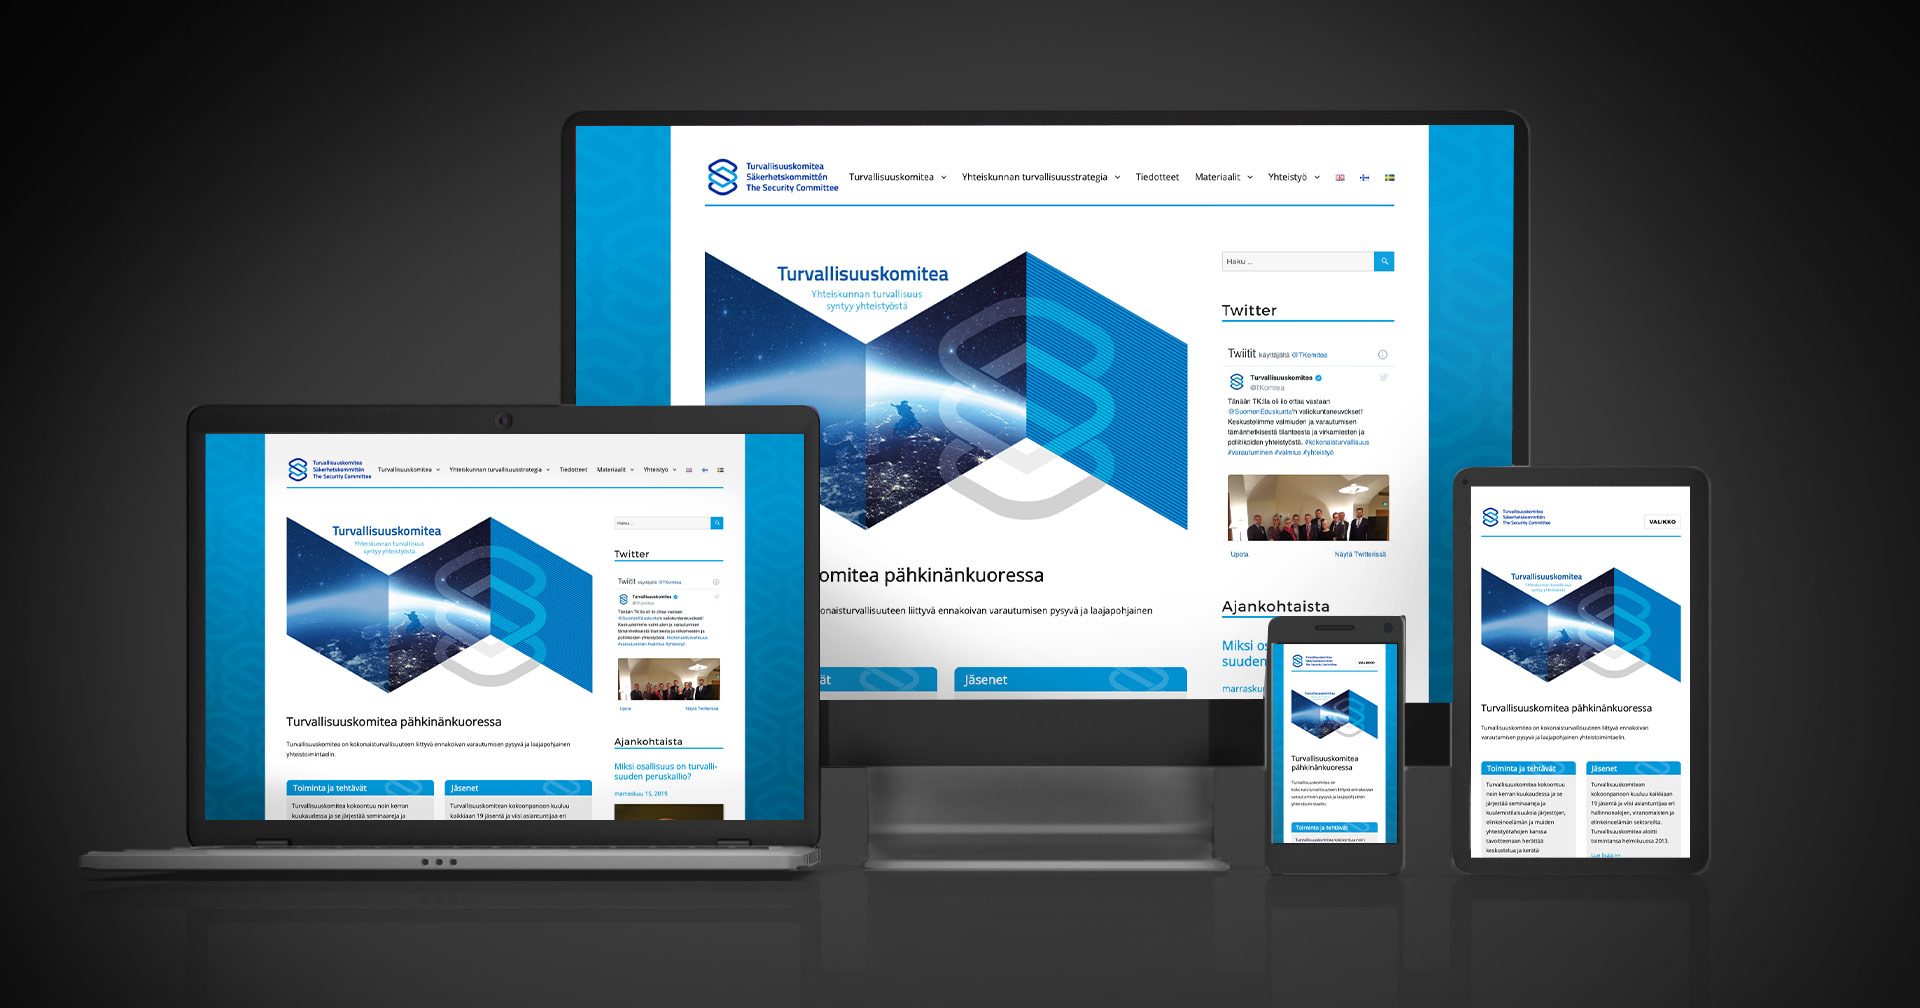 Työnäyte: Turvallisuuskomitean responsiivisen verkkosivuston suunnittelu ja toteutus